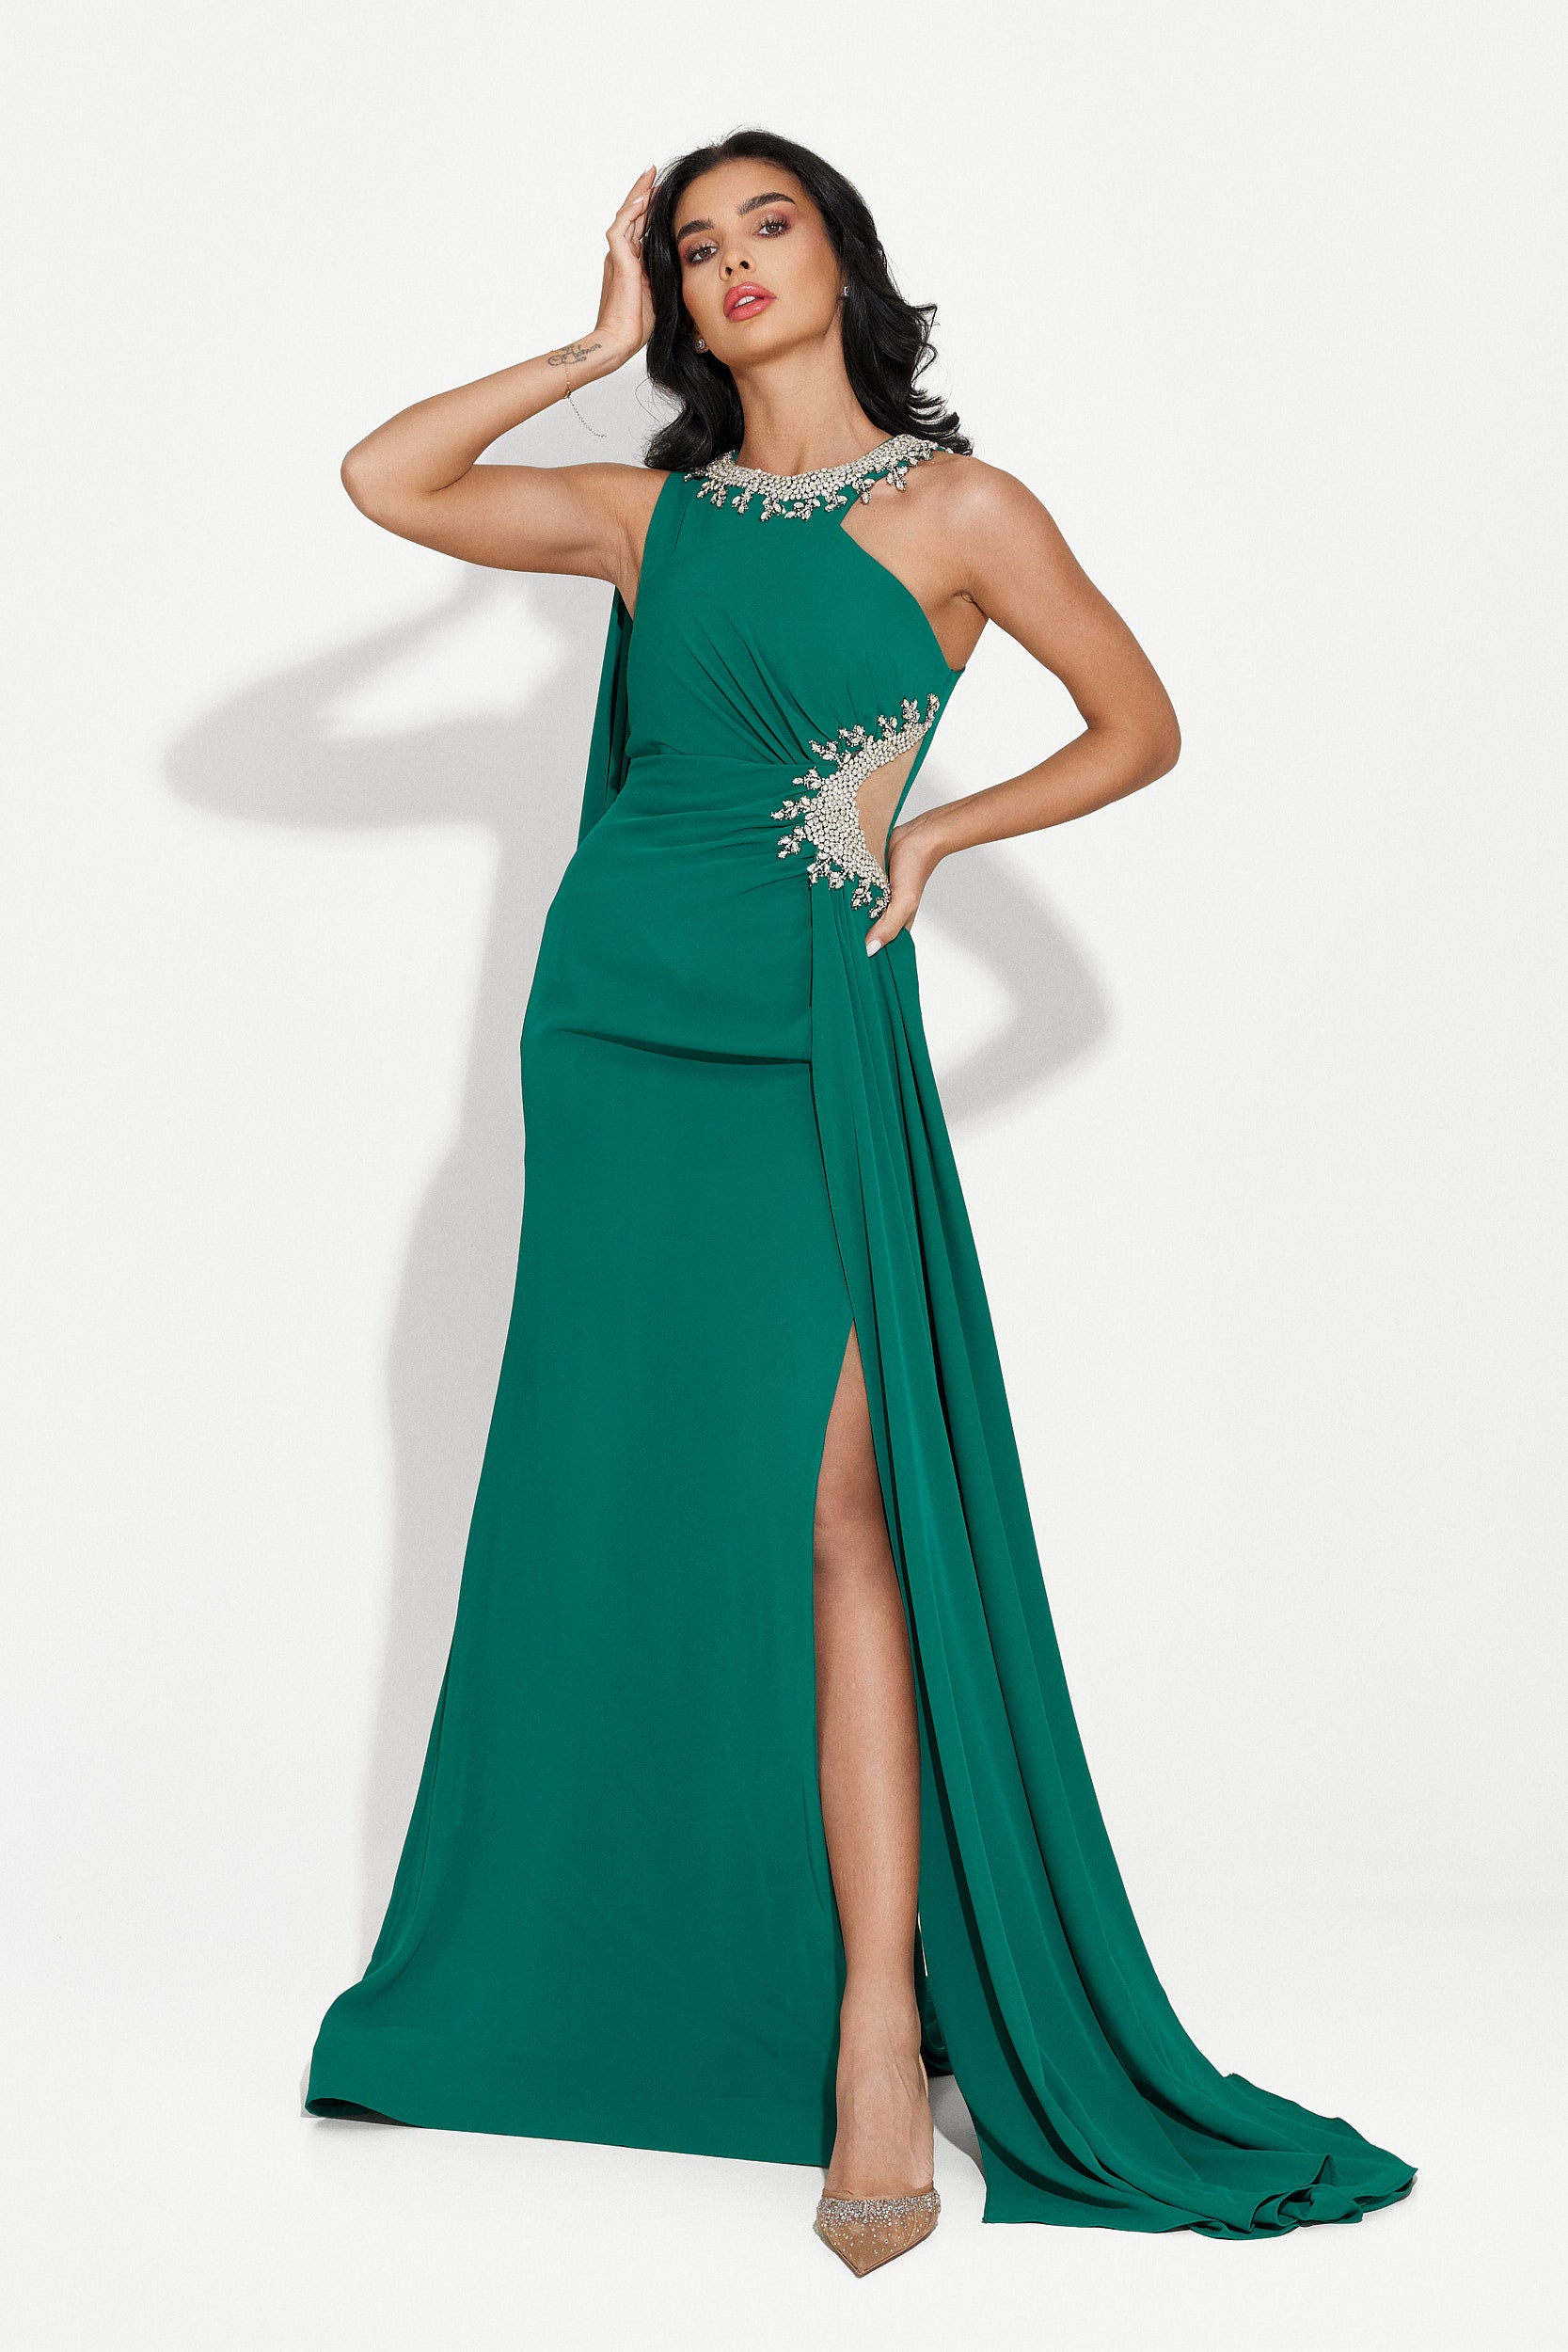 Alexea Bogas hosszú zöld női ruha